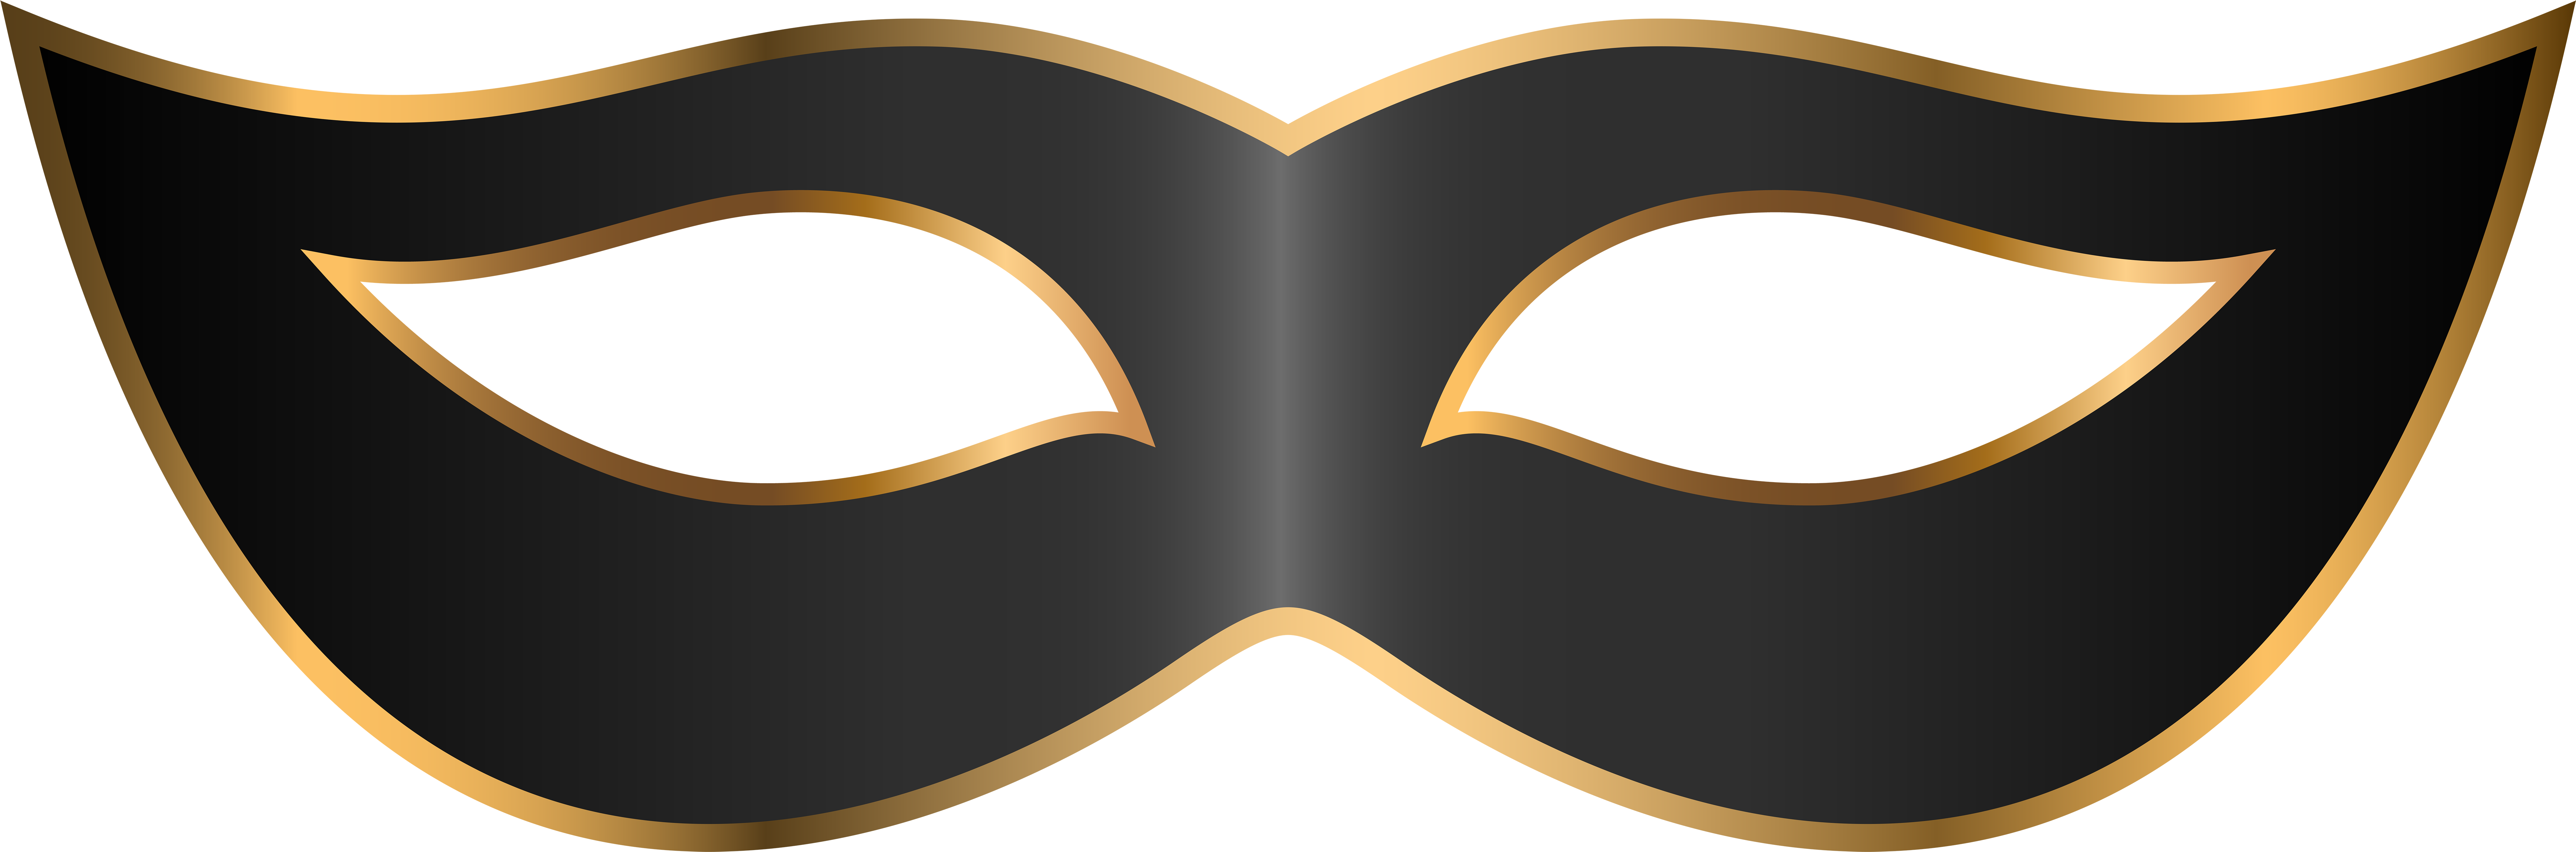 Bane Mask Transparent - Carnival Mask Black Png (8000x2707), Png Download